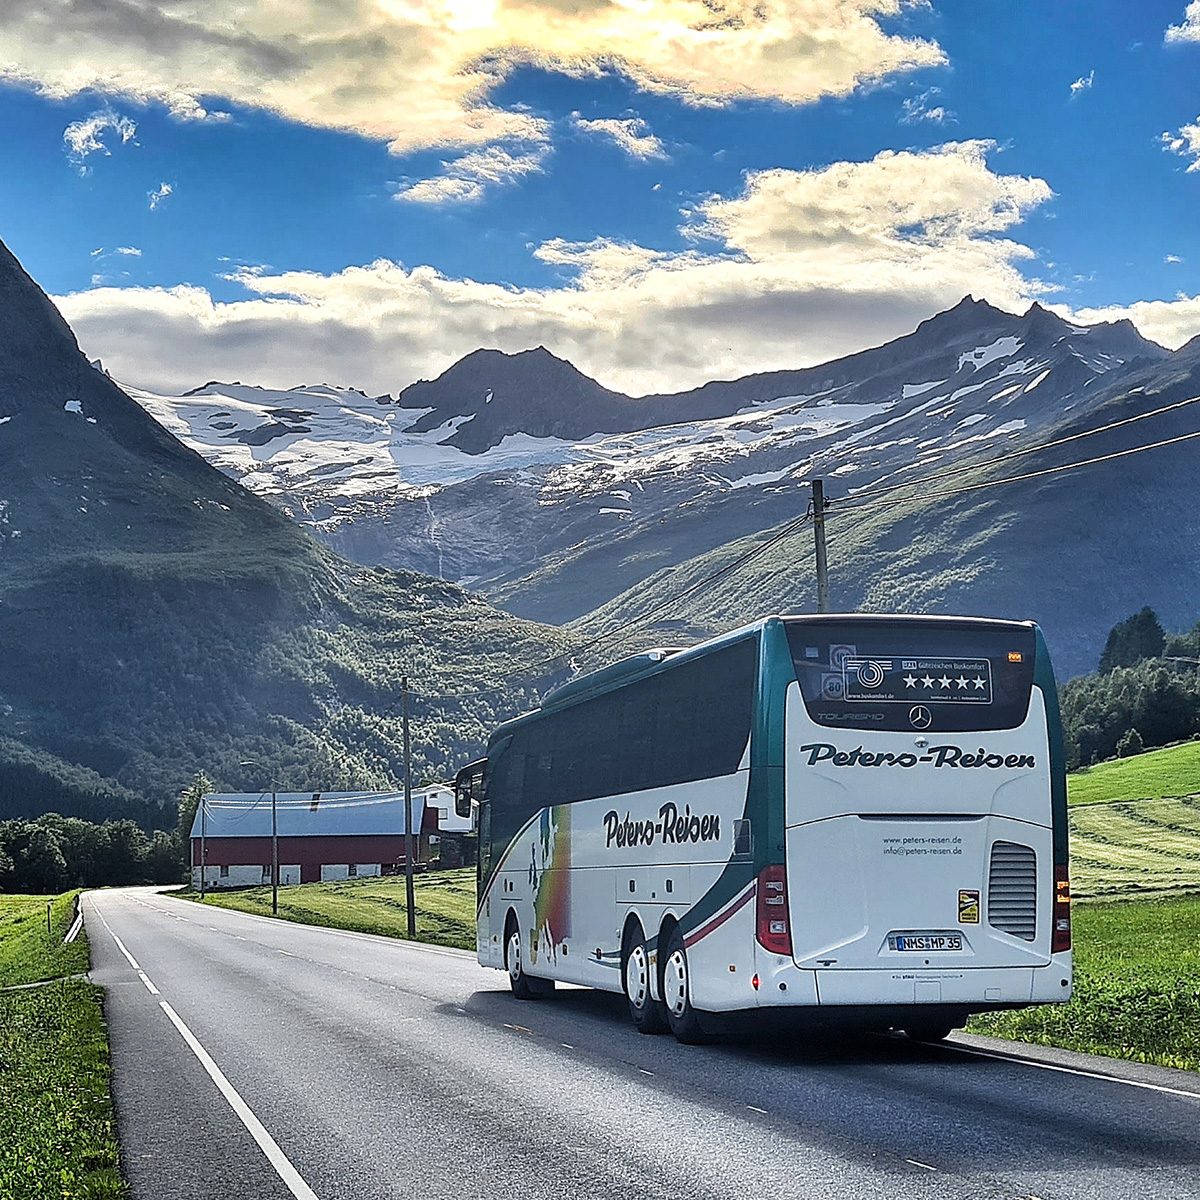 Peters-Reisen Bus steht in den italienischen Alpen. Auf dem Weg zu verschienen Reiseangeboten wie Kreuzfahrten, Busreisen, Tagesfahrten, Reisekultour, Kurbus